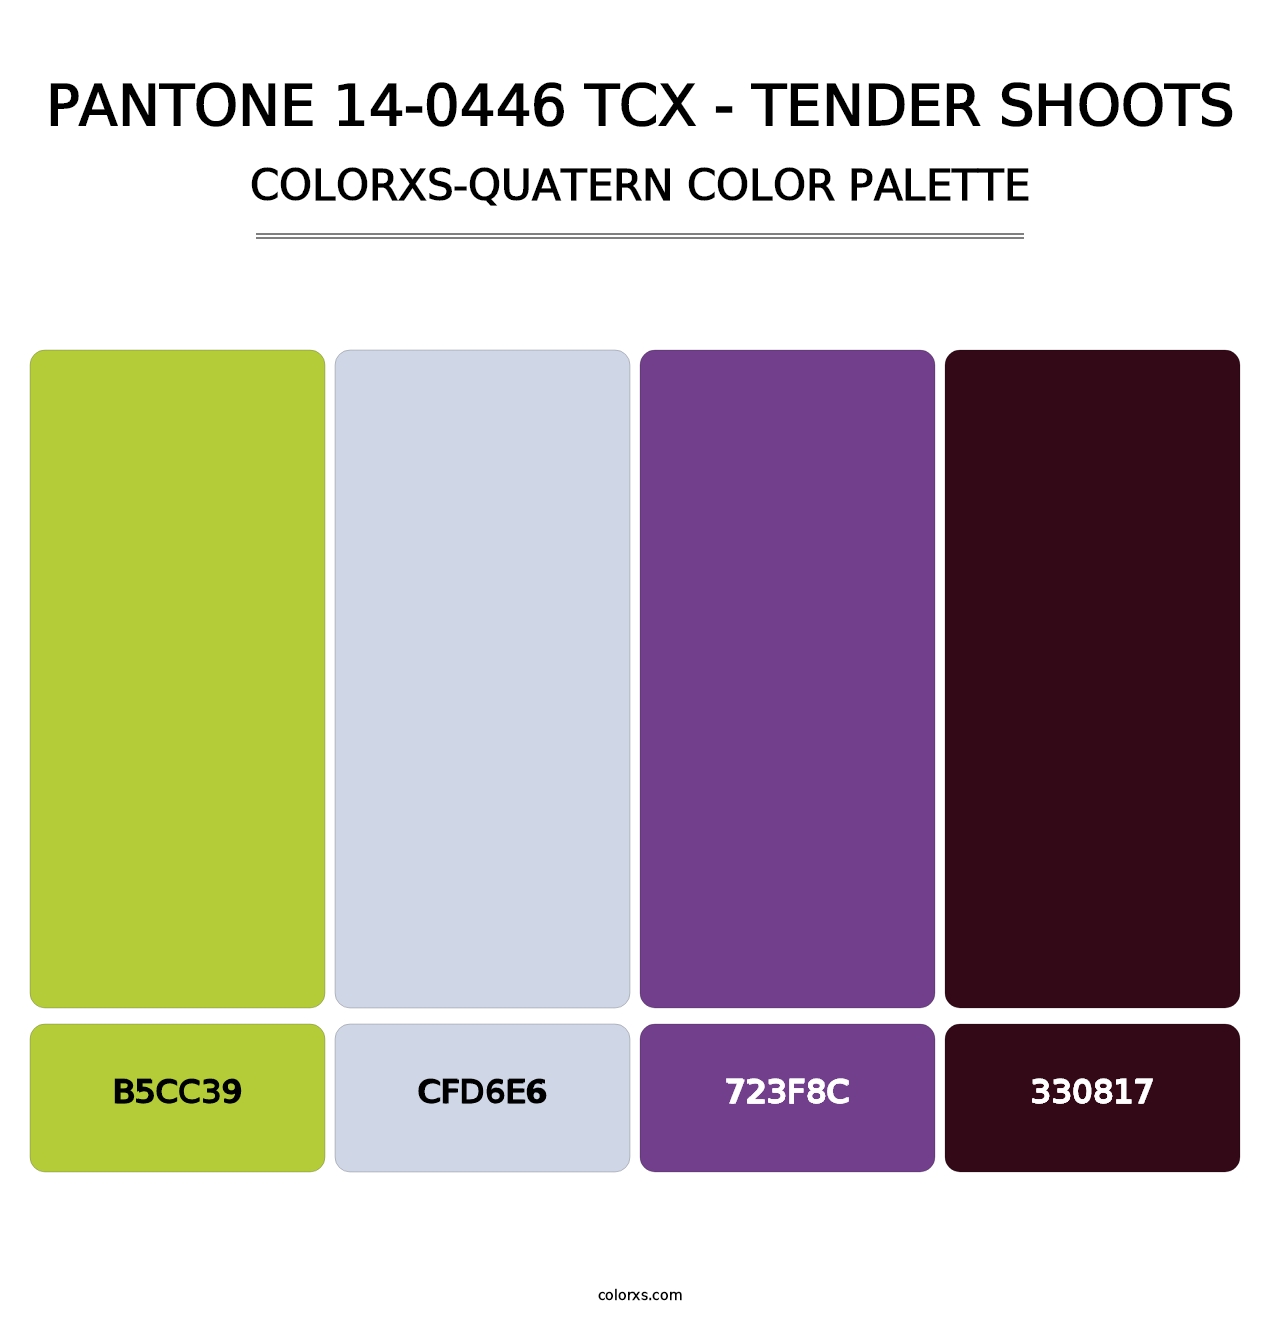 PANTONE 14-0446 TCX - Tender Shoots - Colorxs Quatern Palette